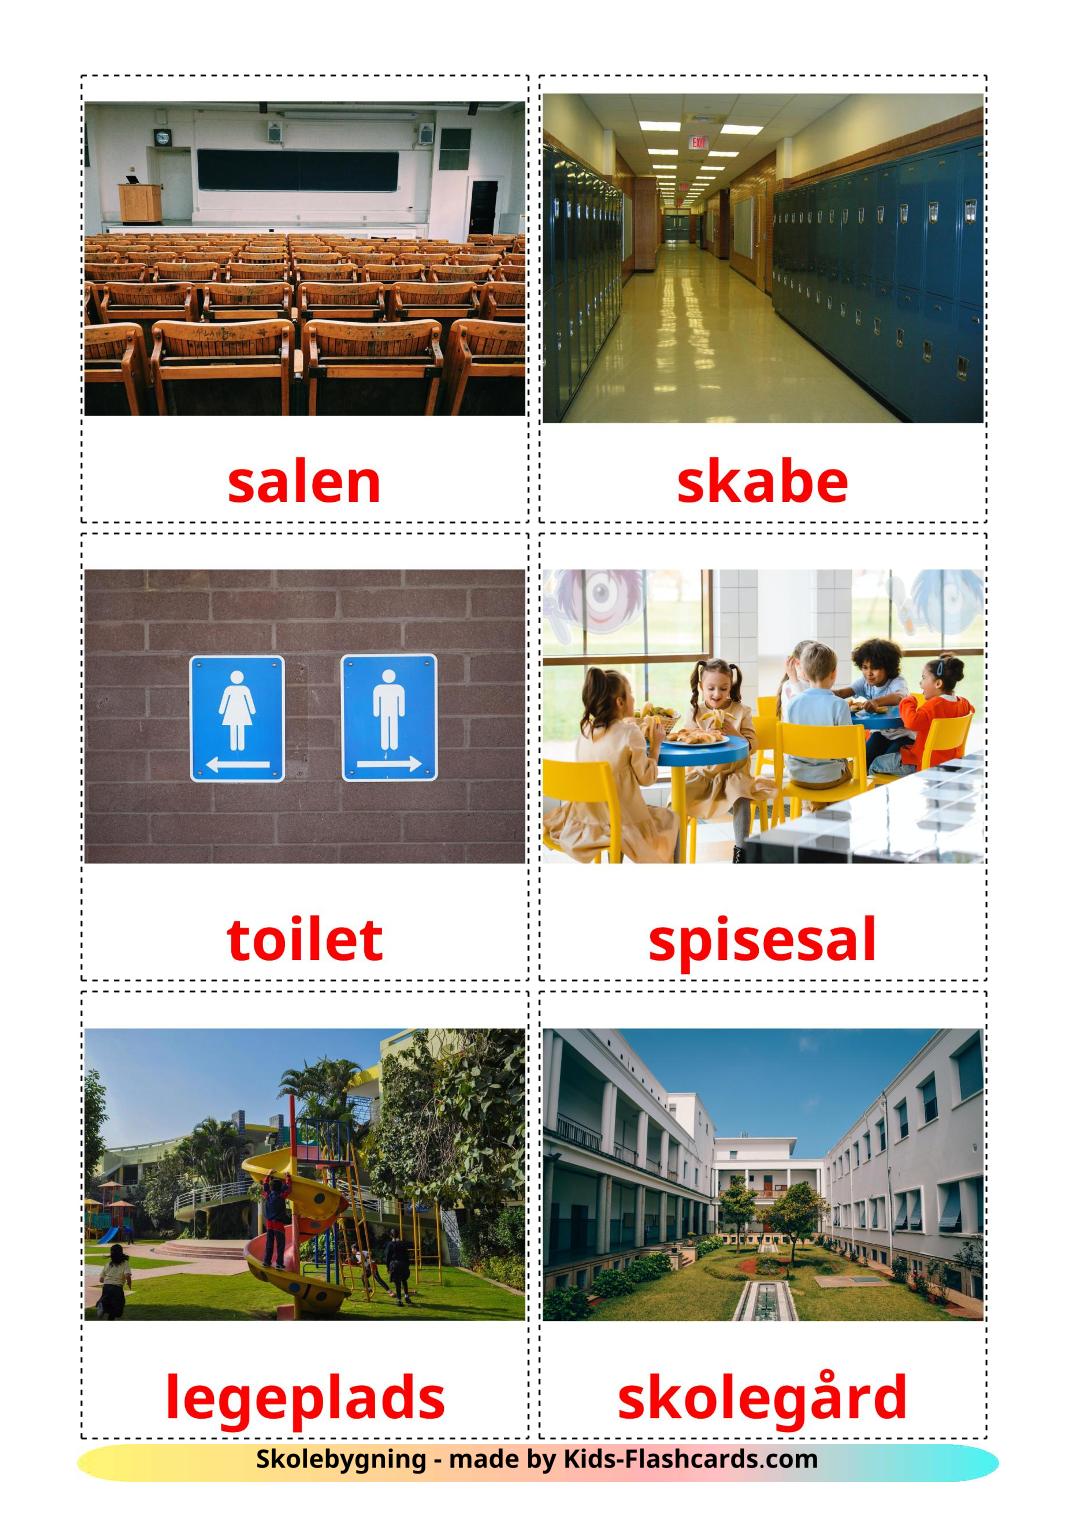 Edificio escolar - 17 fichas de dansk para imprimir gratis 